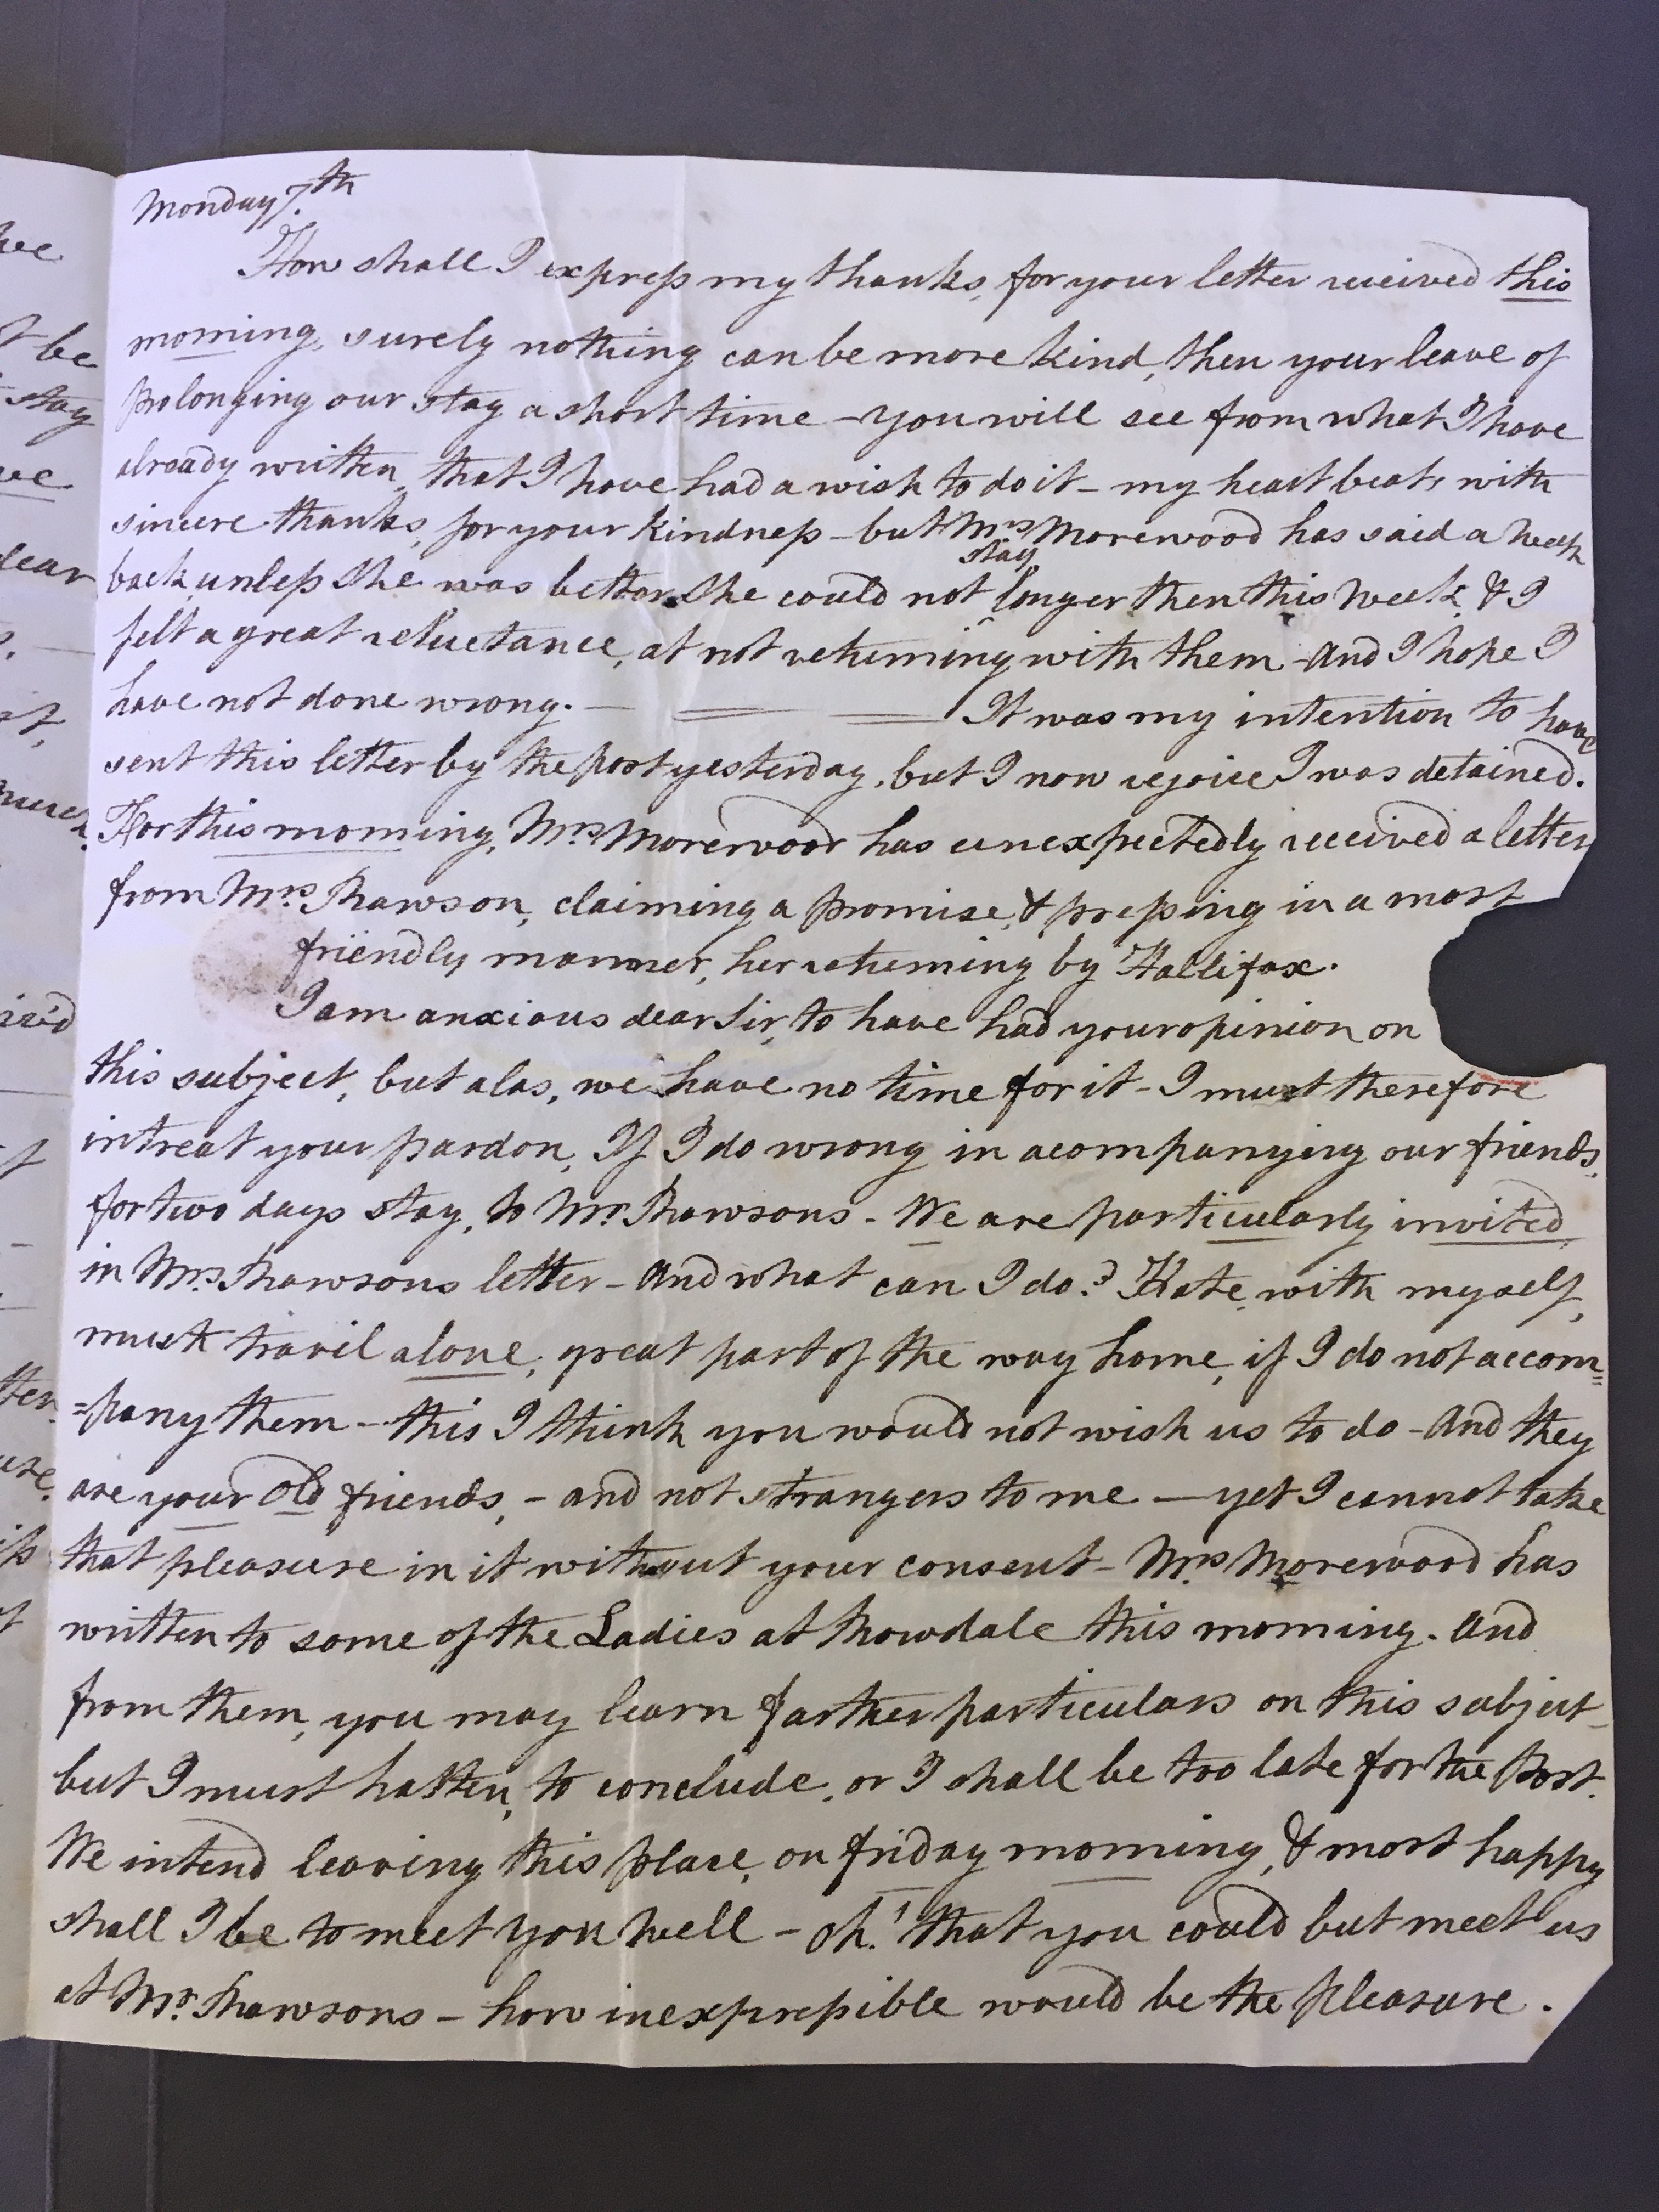 Image #3 of letter: Elizabeth Longsdon (snr) to James Longsdon (snr), 5 August 1809